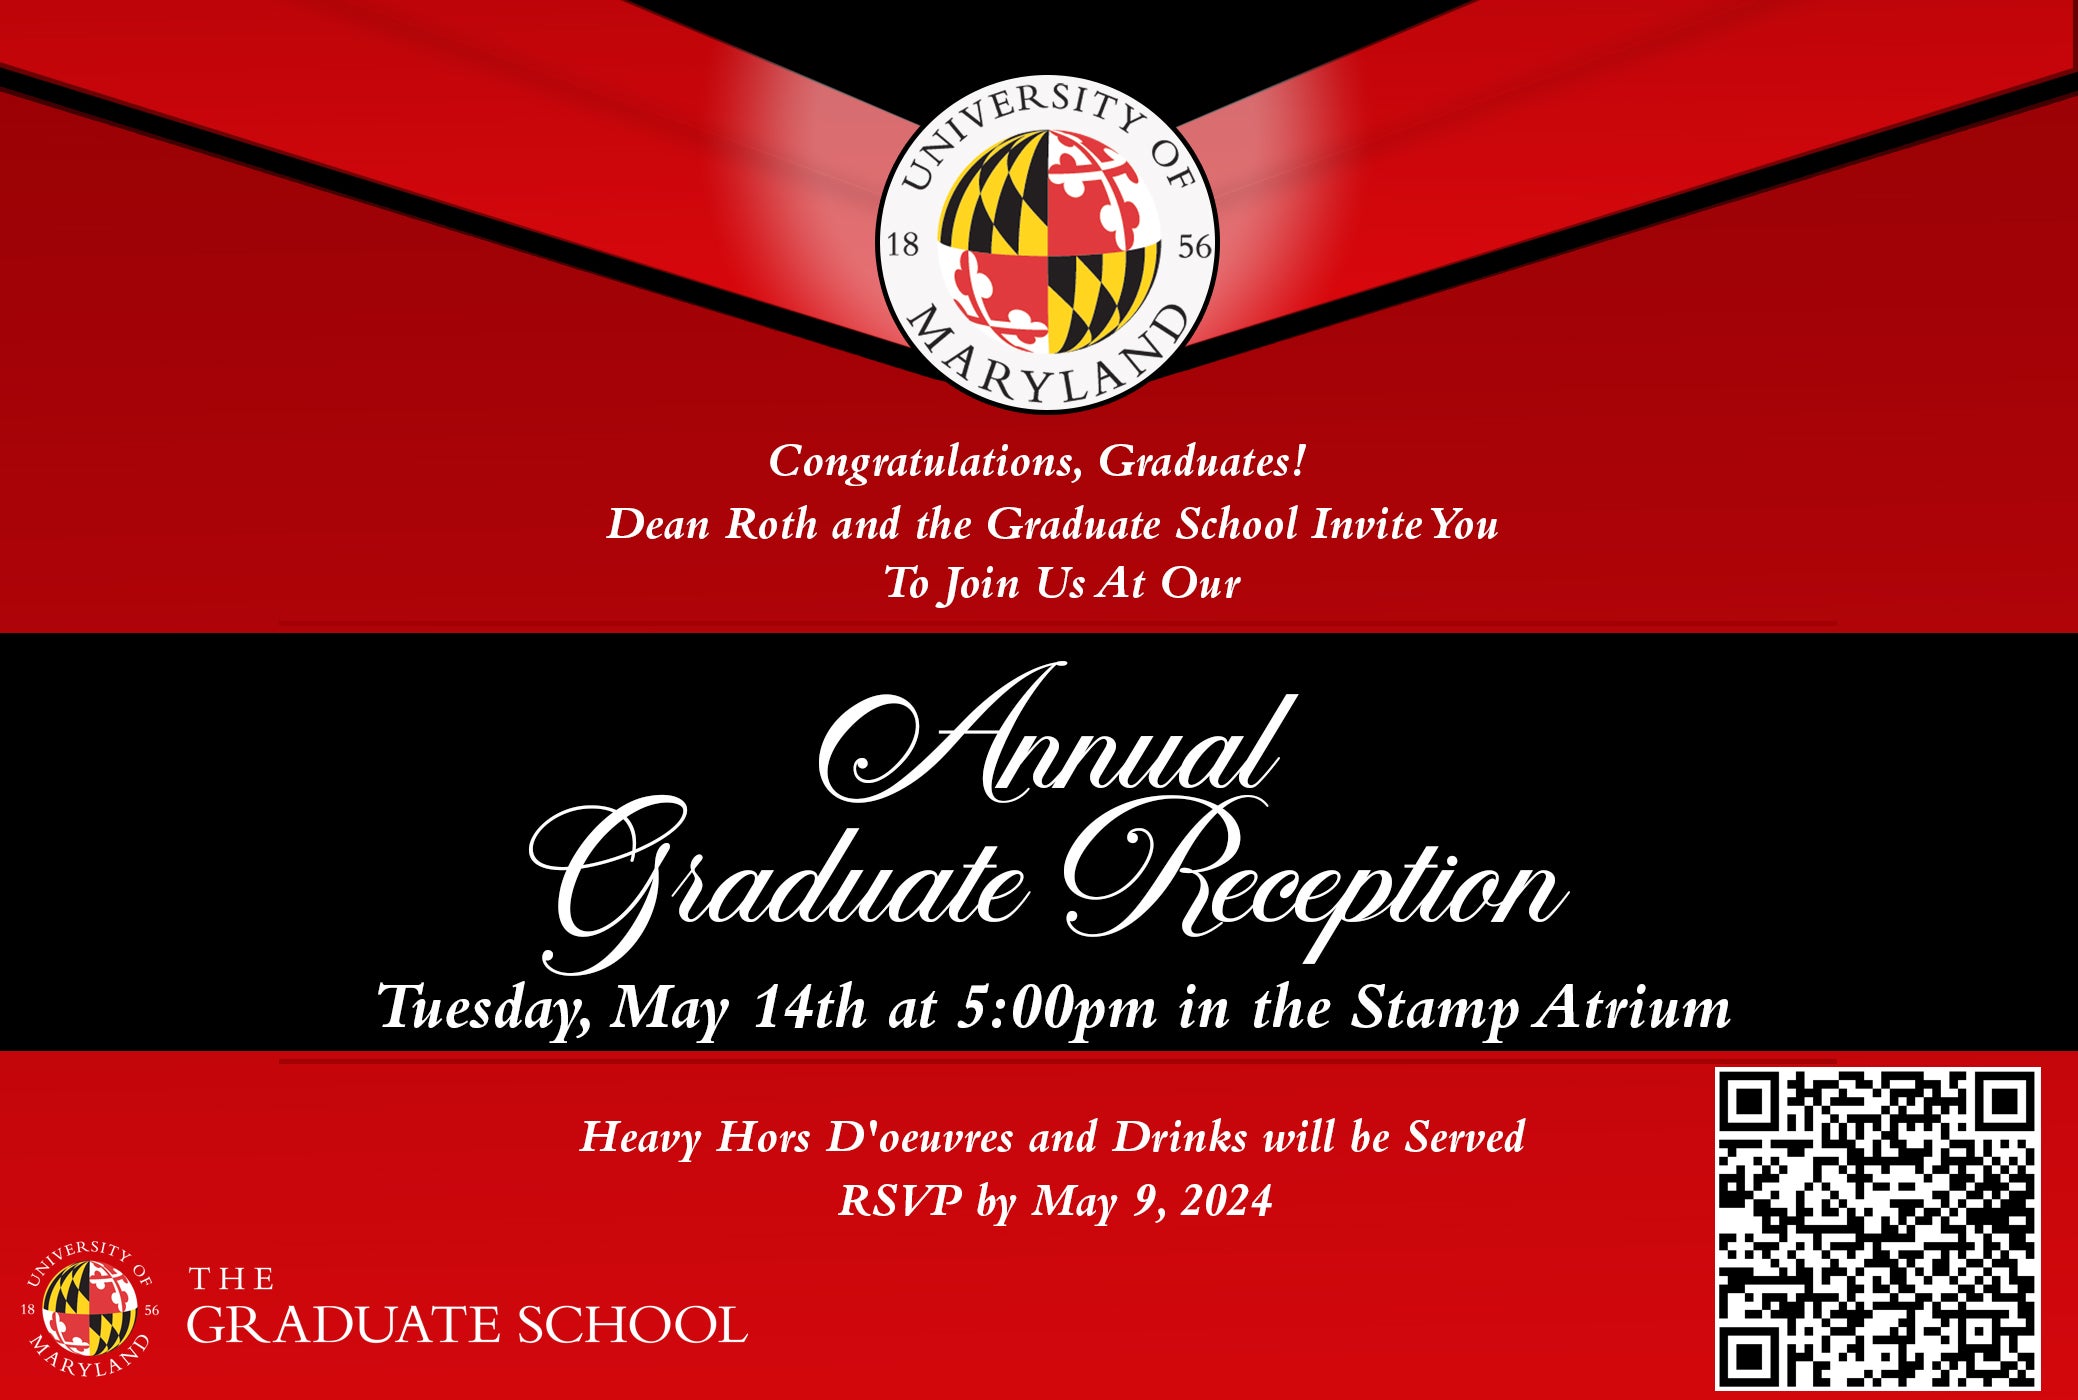 Doctoral Graduation Reception invite